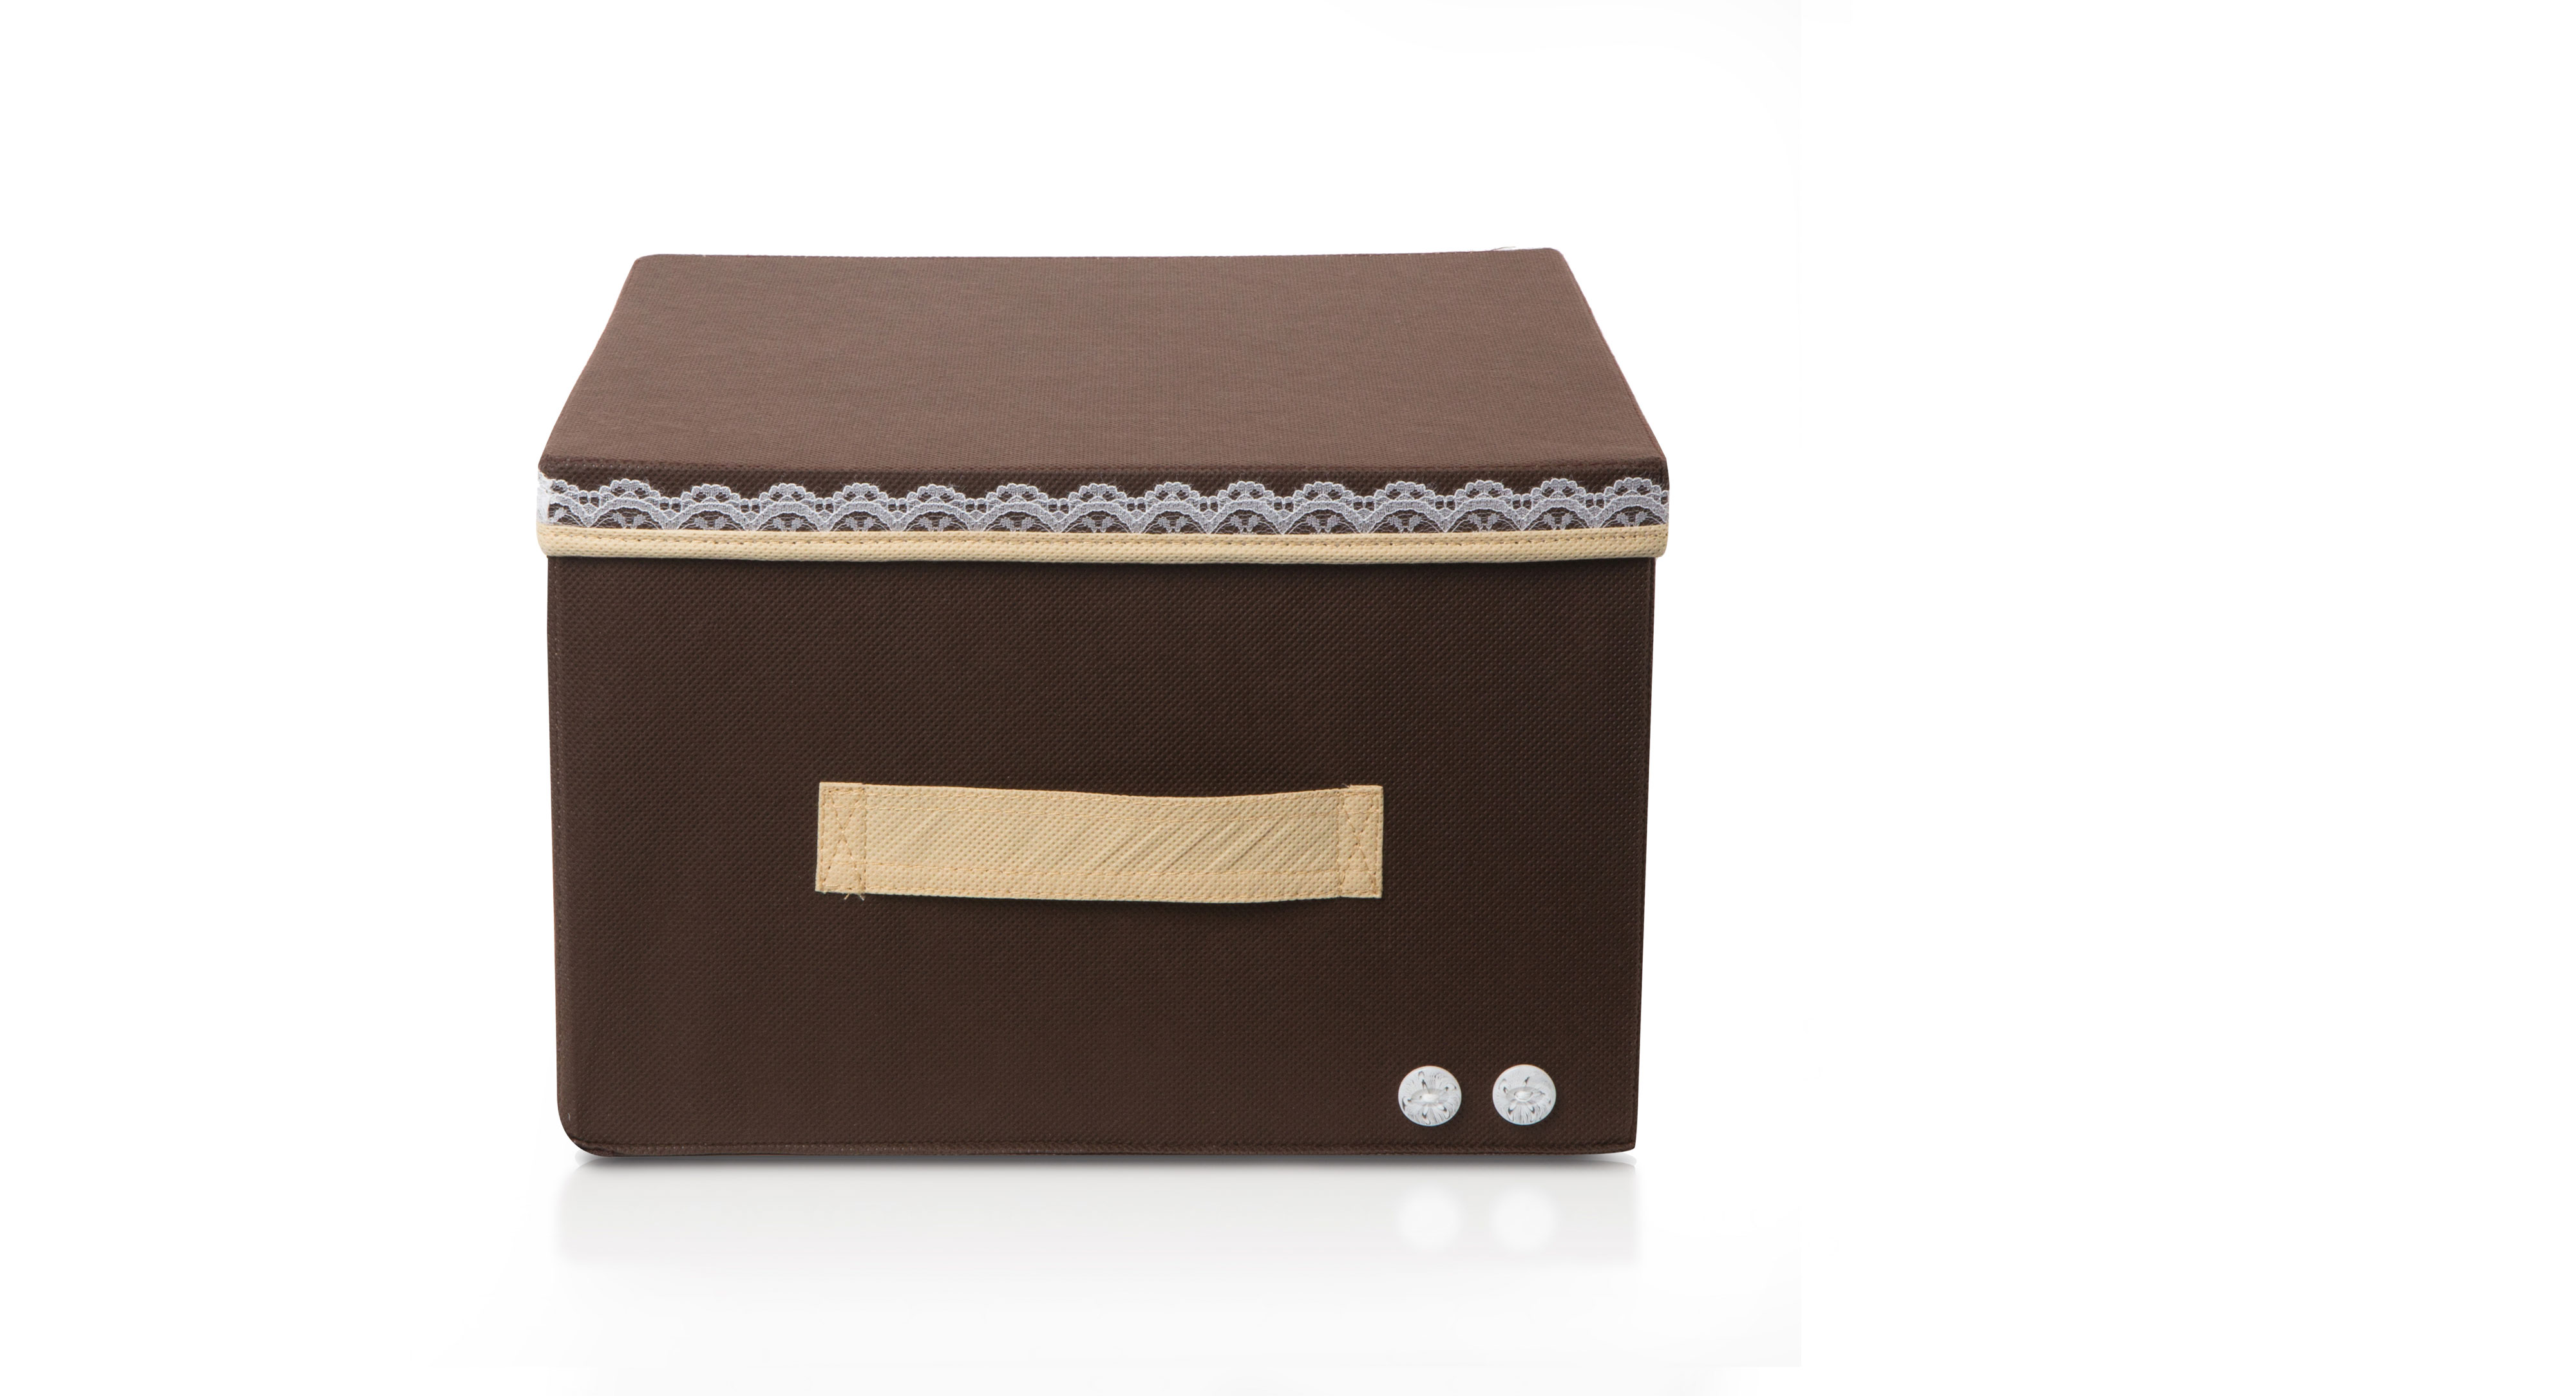 Коробка для хранения Большая "Chocolate Cake" с крышкой - ящик для хранения